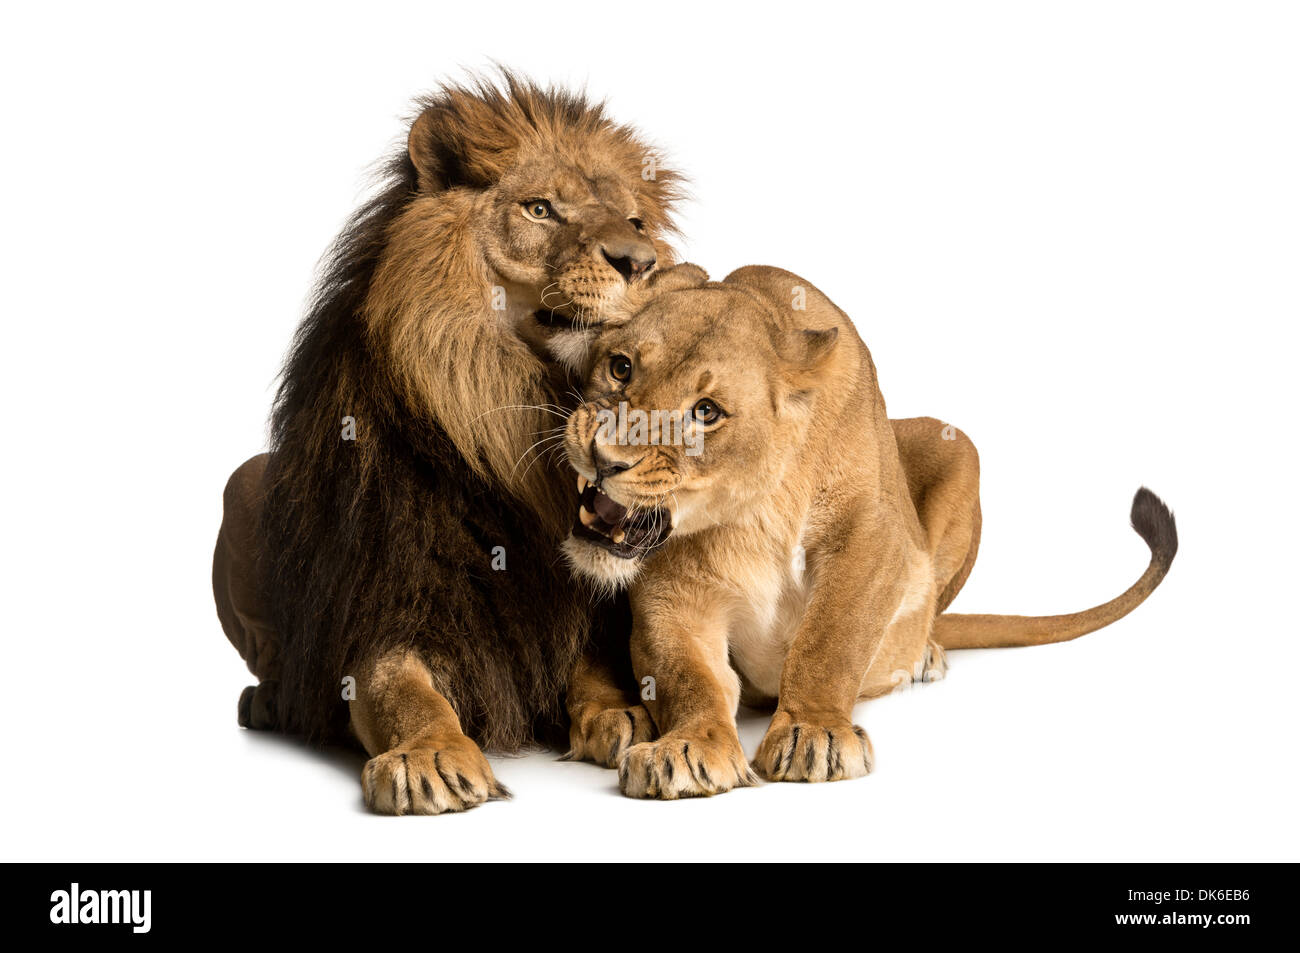 Löwe und Löwin zärtlich, Panthera Leo, vor weißem Hintergrund Stockfoto